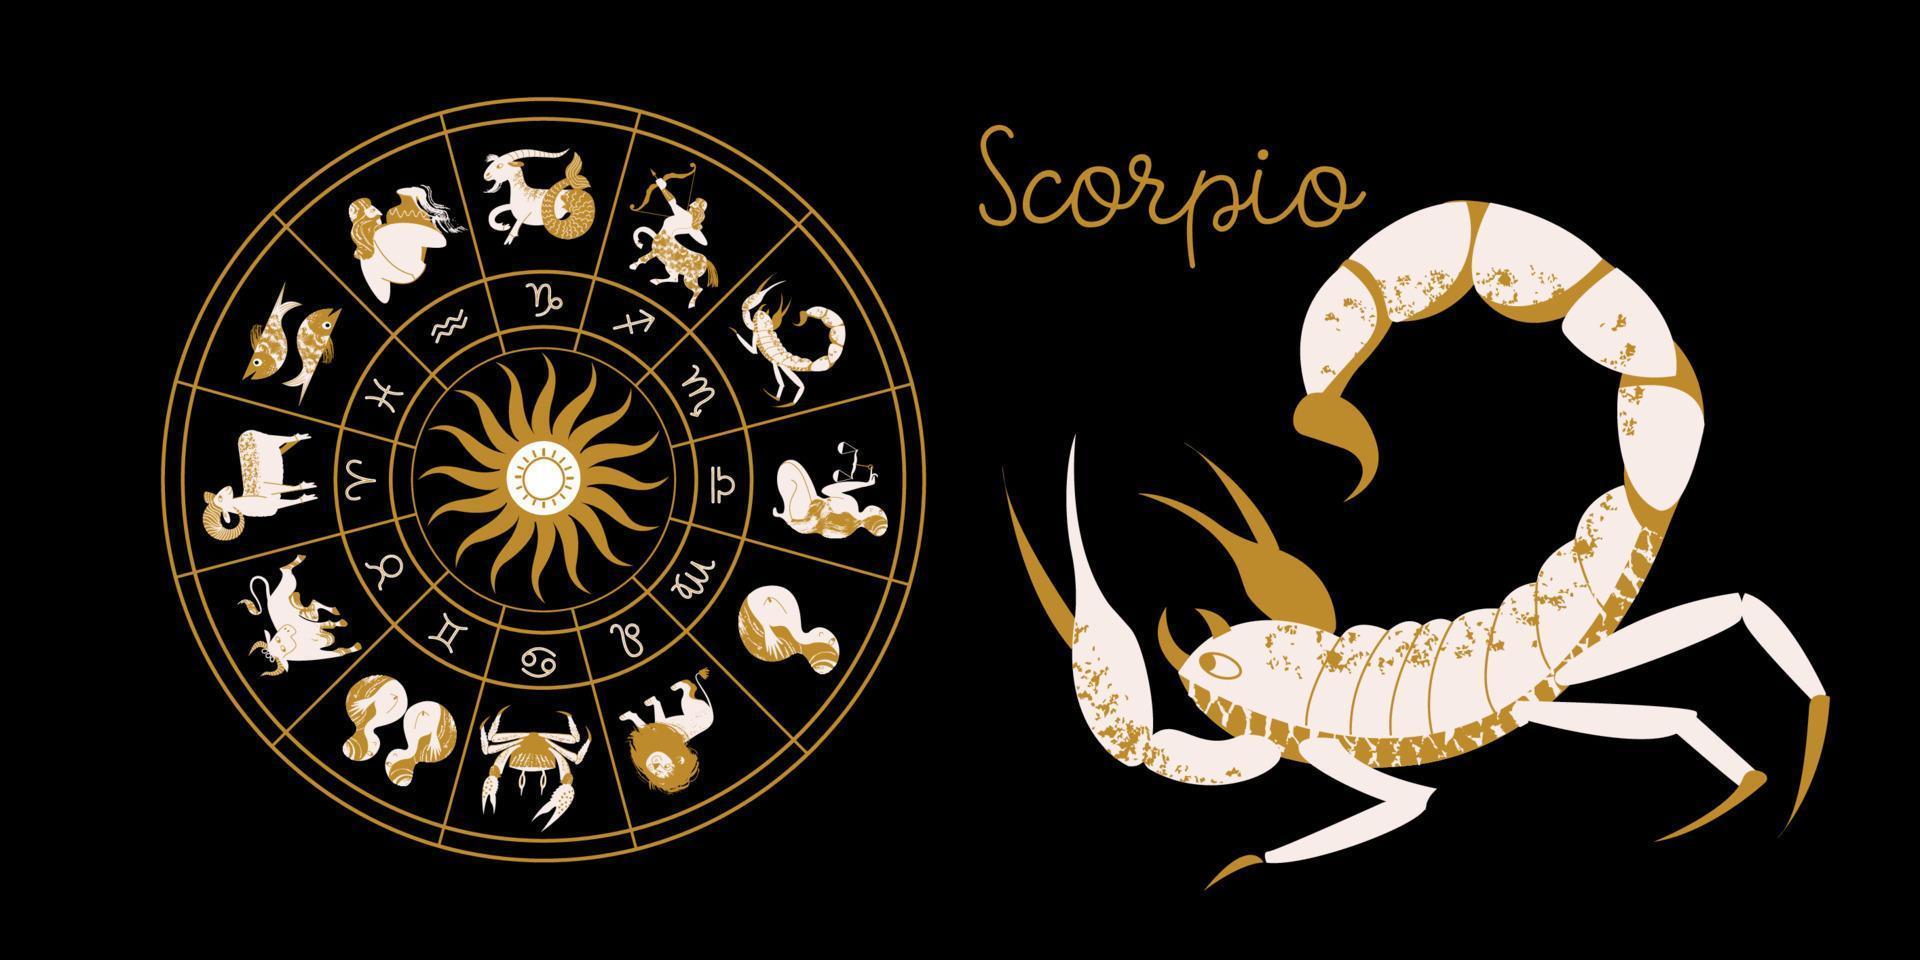 signe du zodiaque scorpion. horoscope et astrologie. horoscope complet dans le cercle. zodiaque roue horoscope avec vecteur de douze signes.